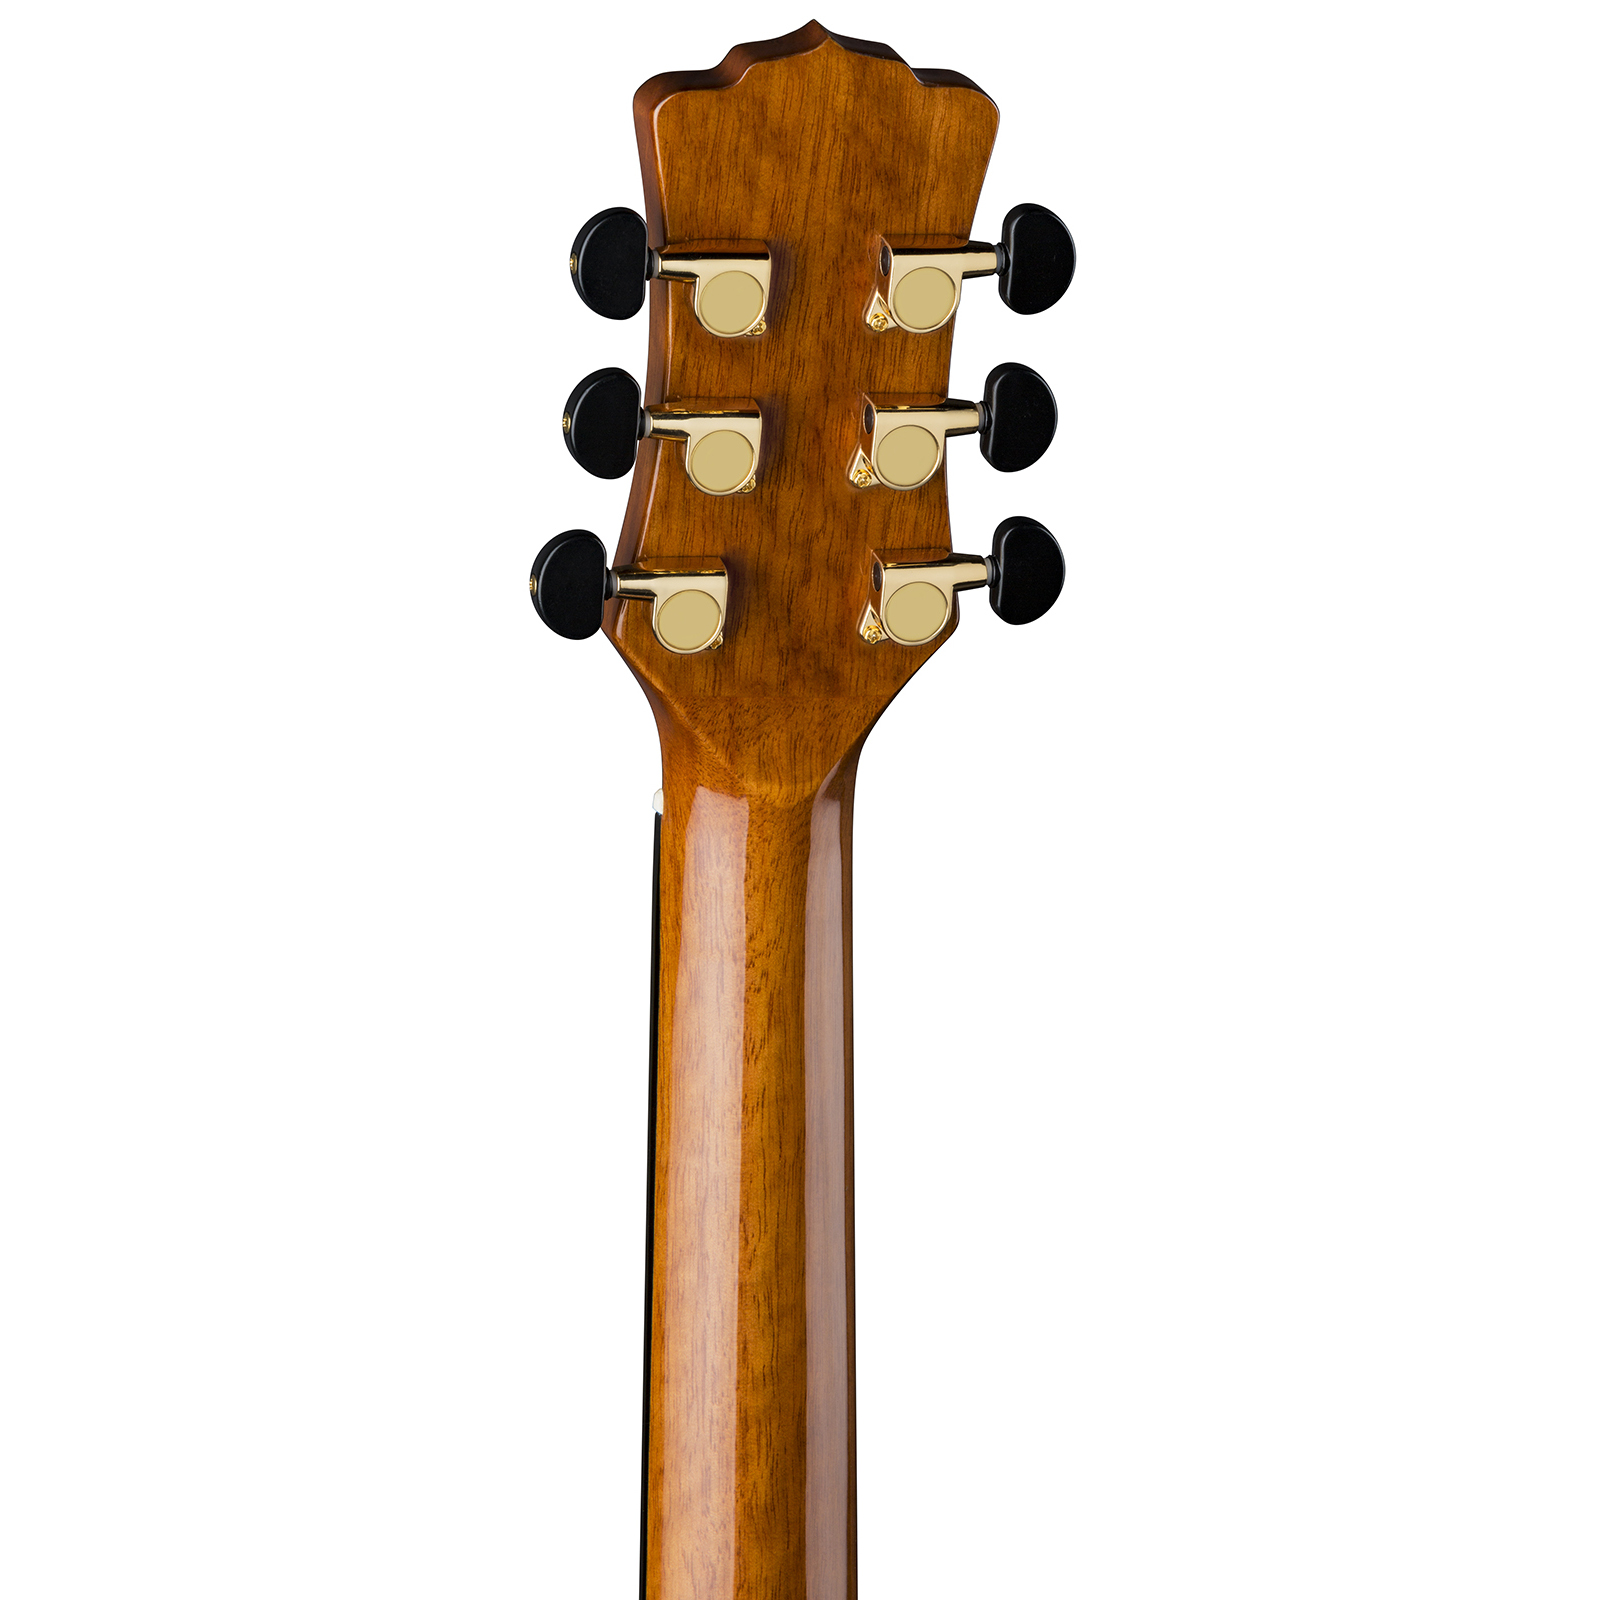 Luna Vista Wolf Tropical Wood Lefty w/Case Guitar